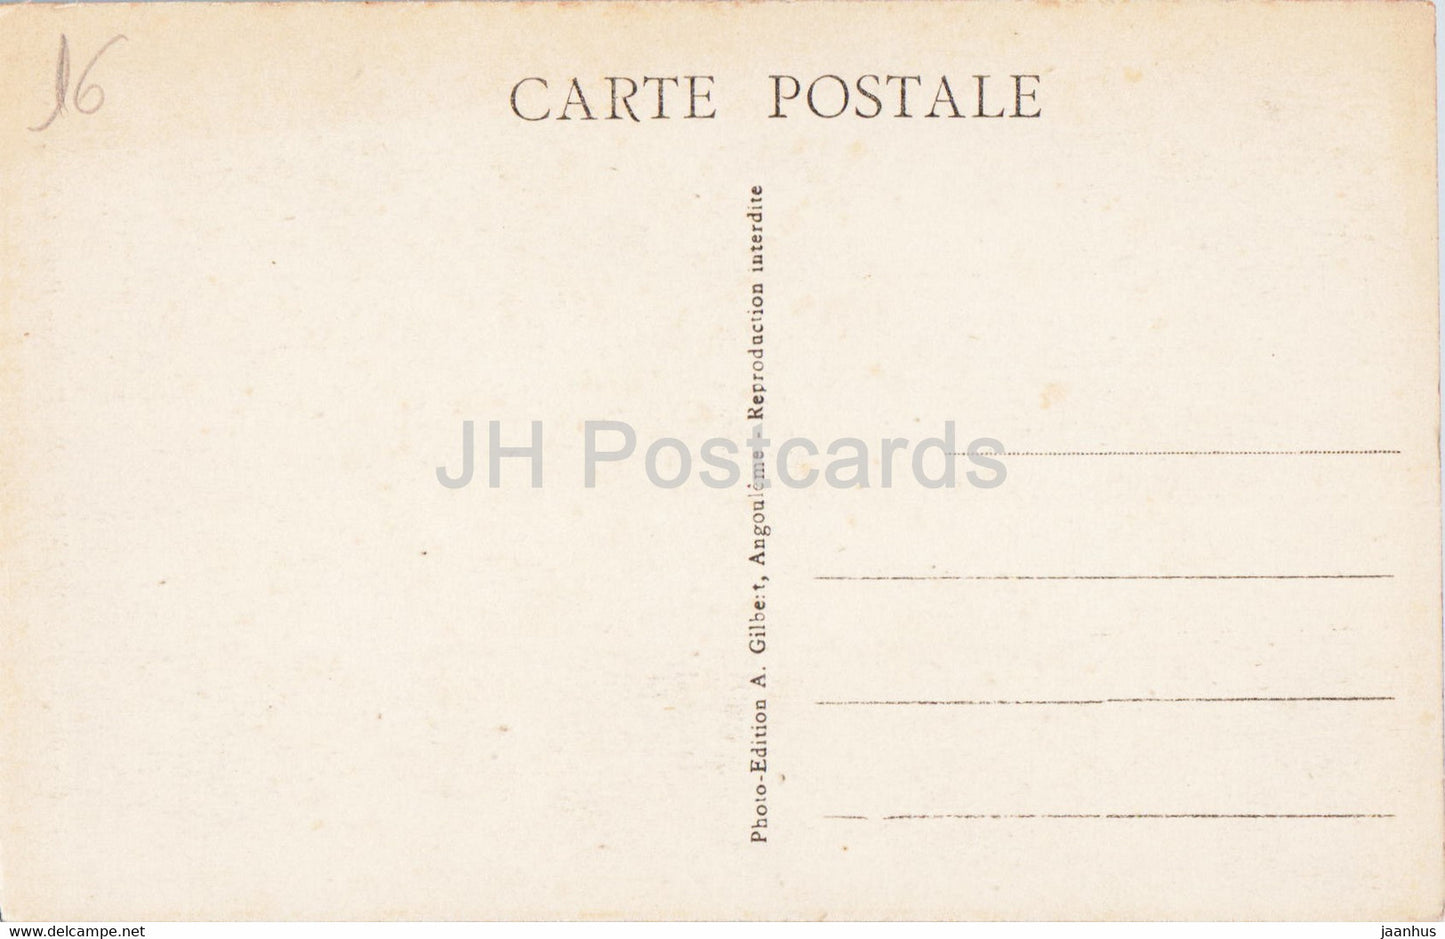 Angouleme - Rue Vauban - 930 - old postcard - France - unused